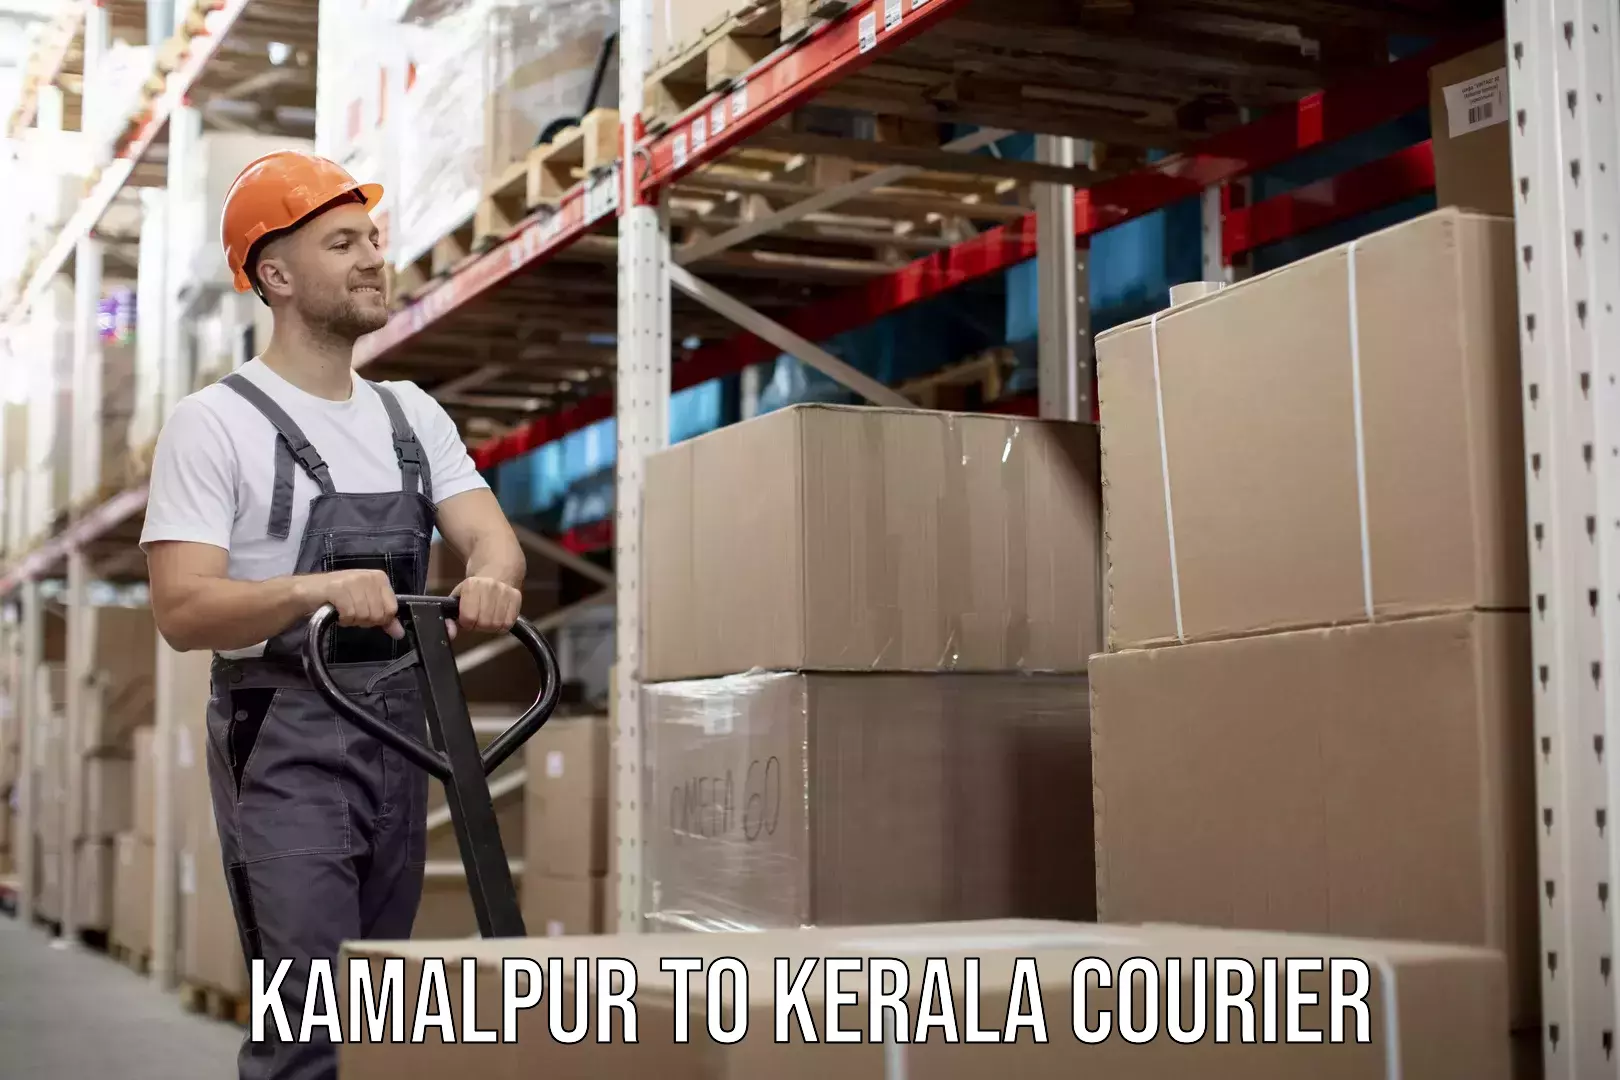 Same day shipping Kamalpur to Kerala